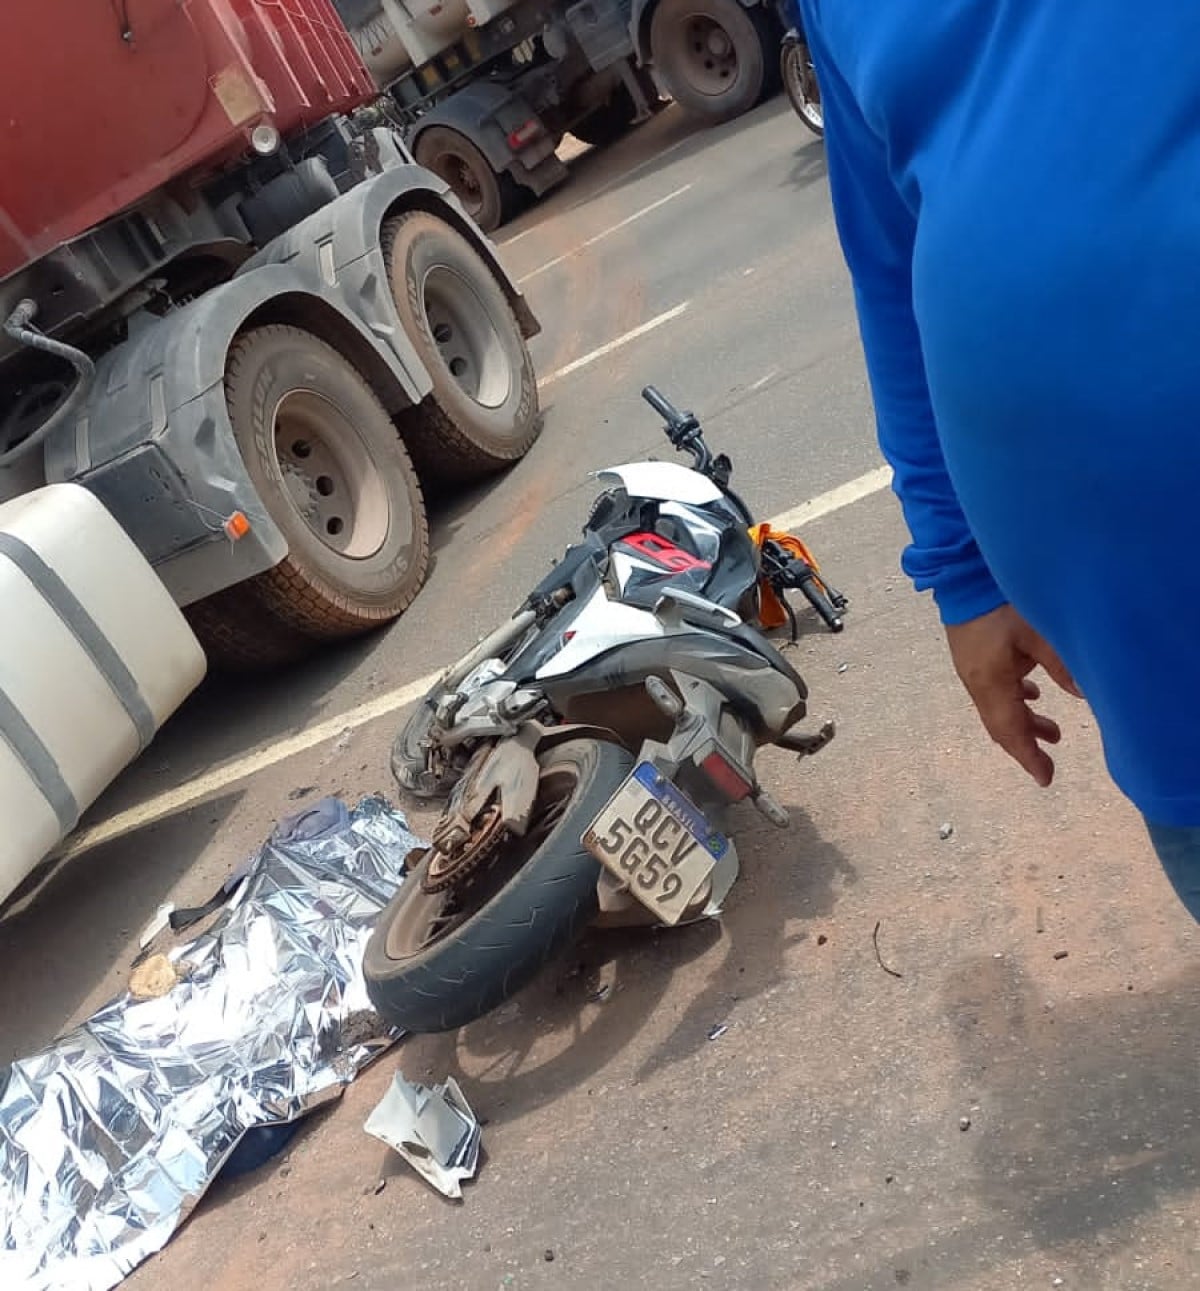 O motociclista colidiu na lateral esquerda do caminhão, não resistindo aos ferimentos e morreu no local.